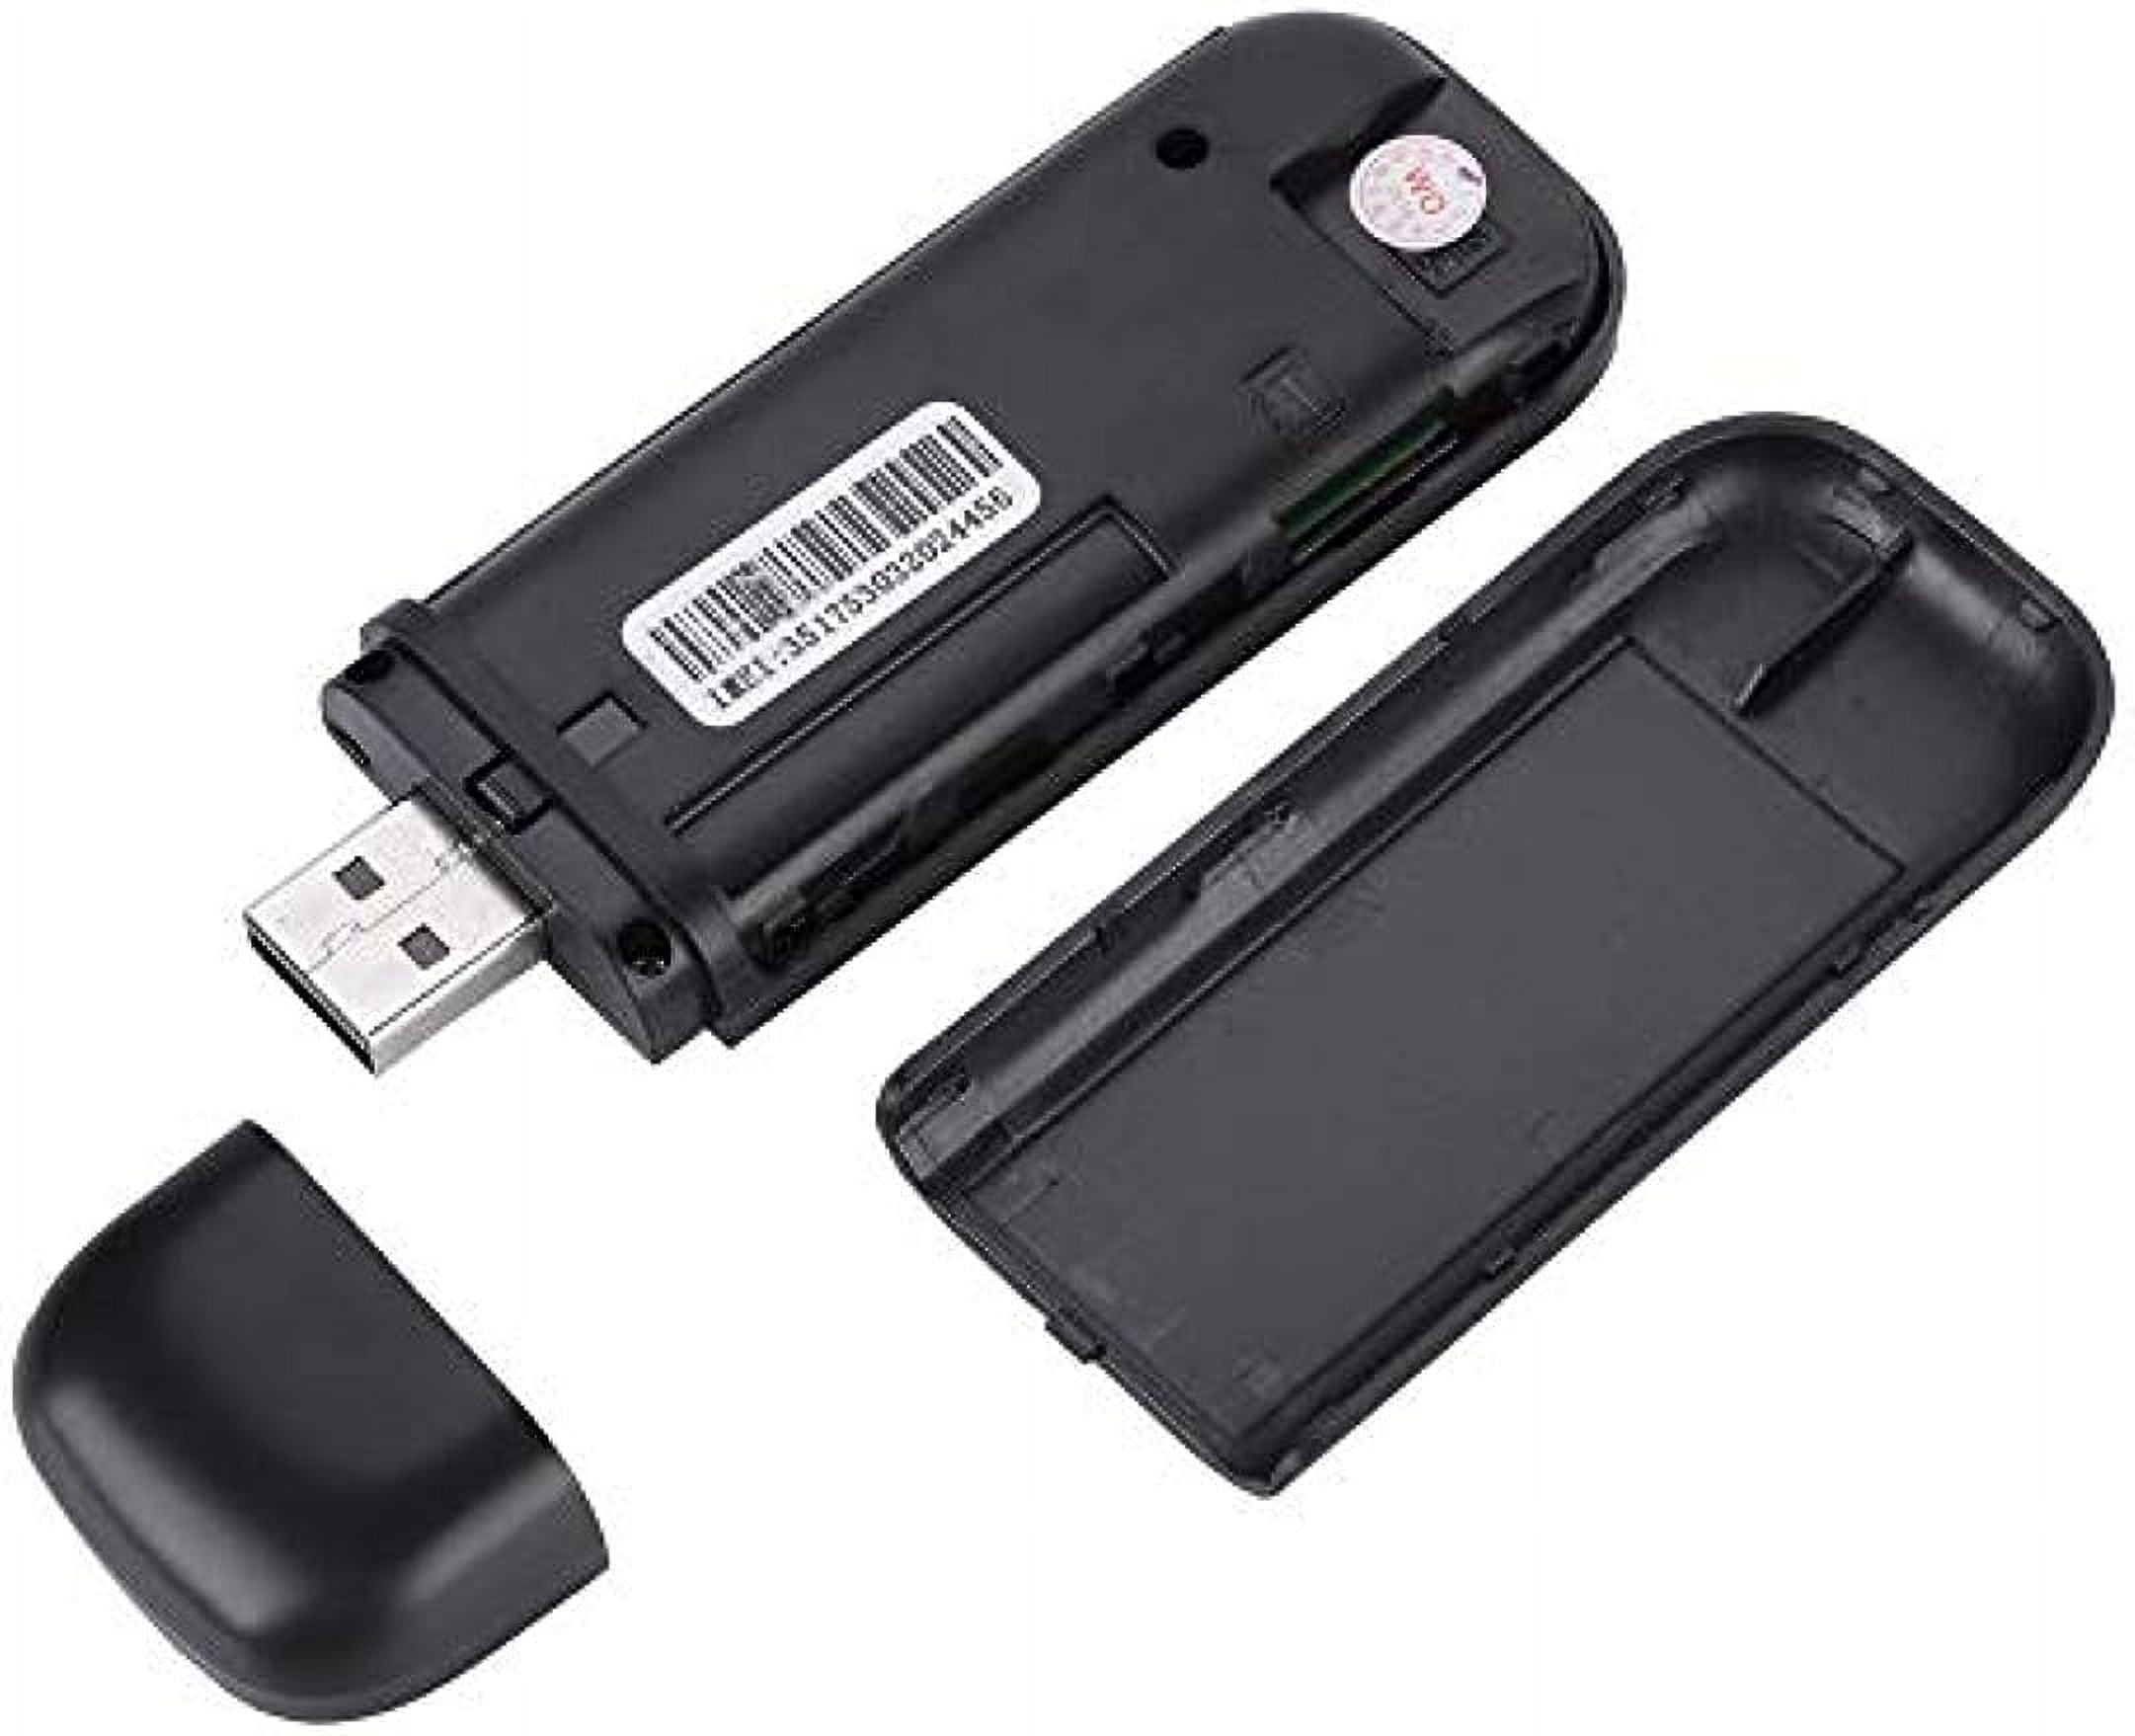 H762-UE 4G - Routeur WIFI portable 4G pour voiture, point d'accès 100Mbps,  clé USB sans fil, modem mobile à l